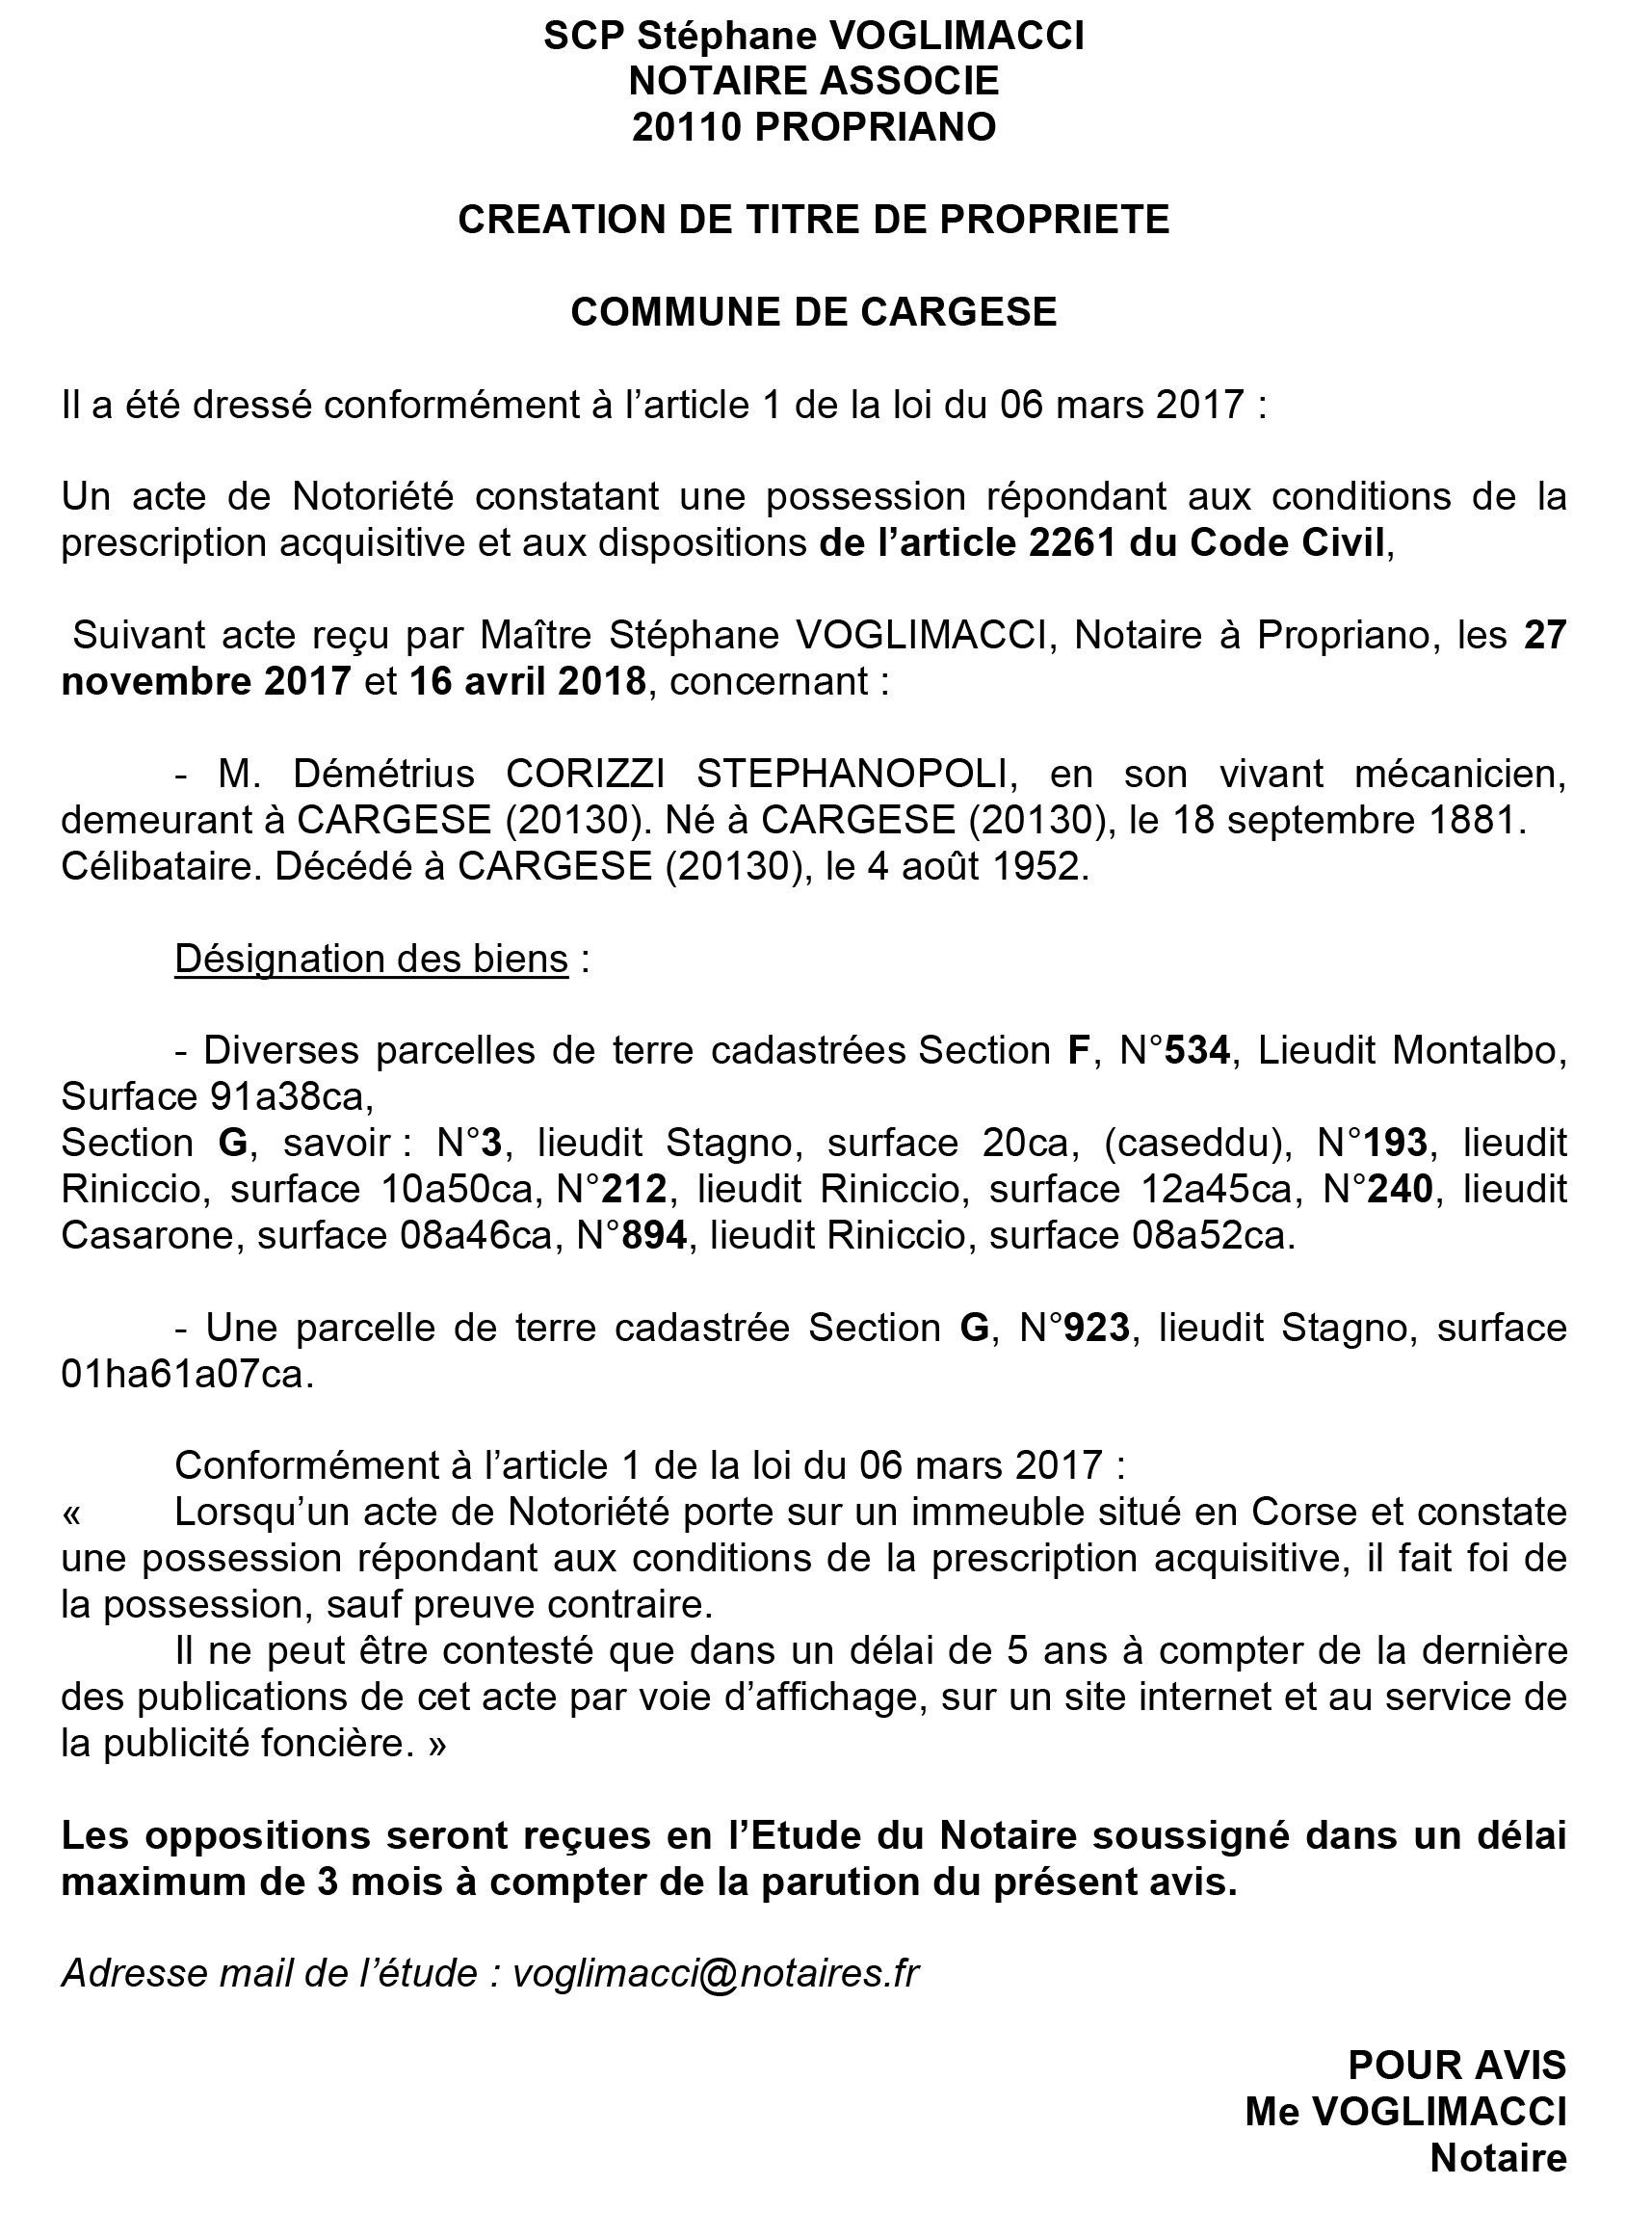 Avis de création de titre de propriété - commune de Cargèse (Corse du Sud)